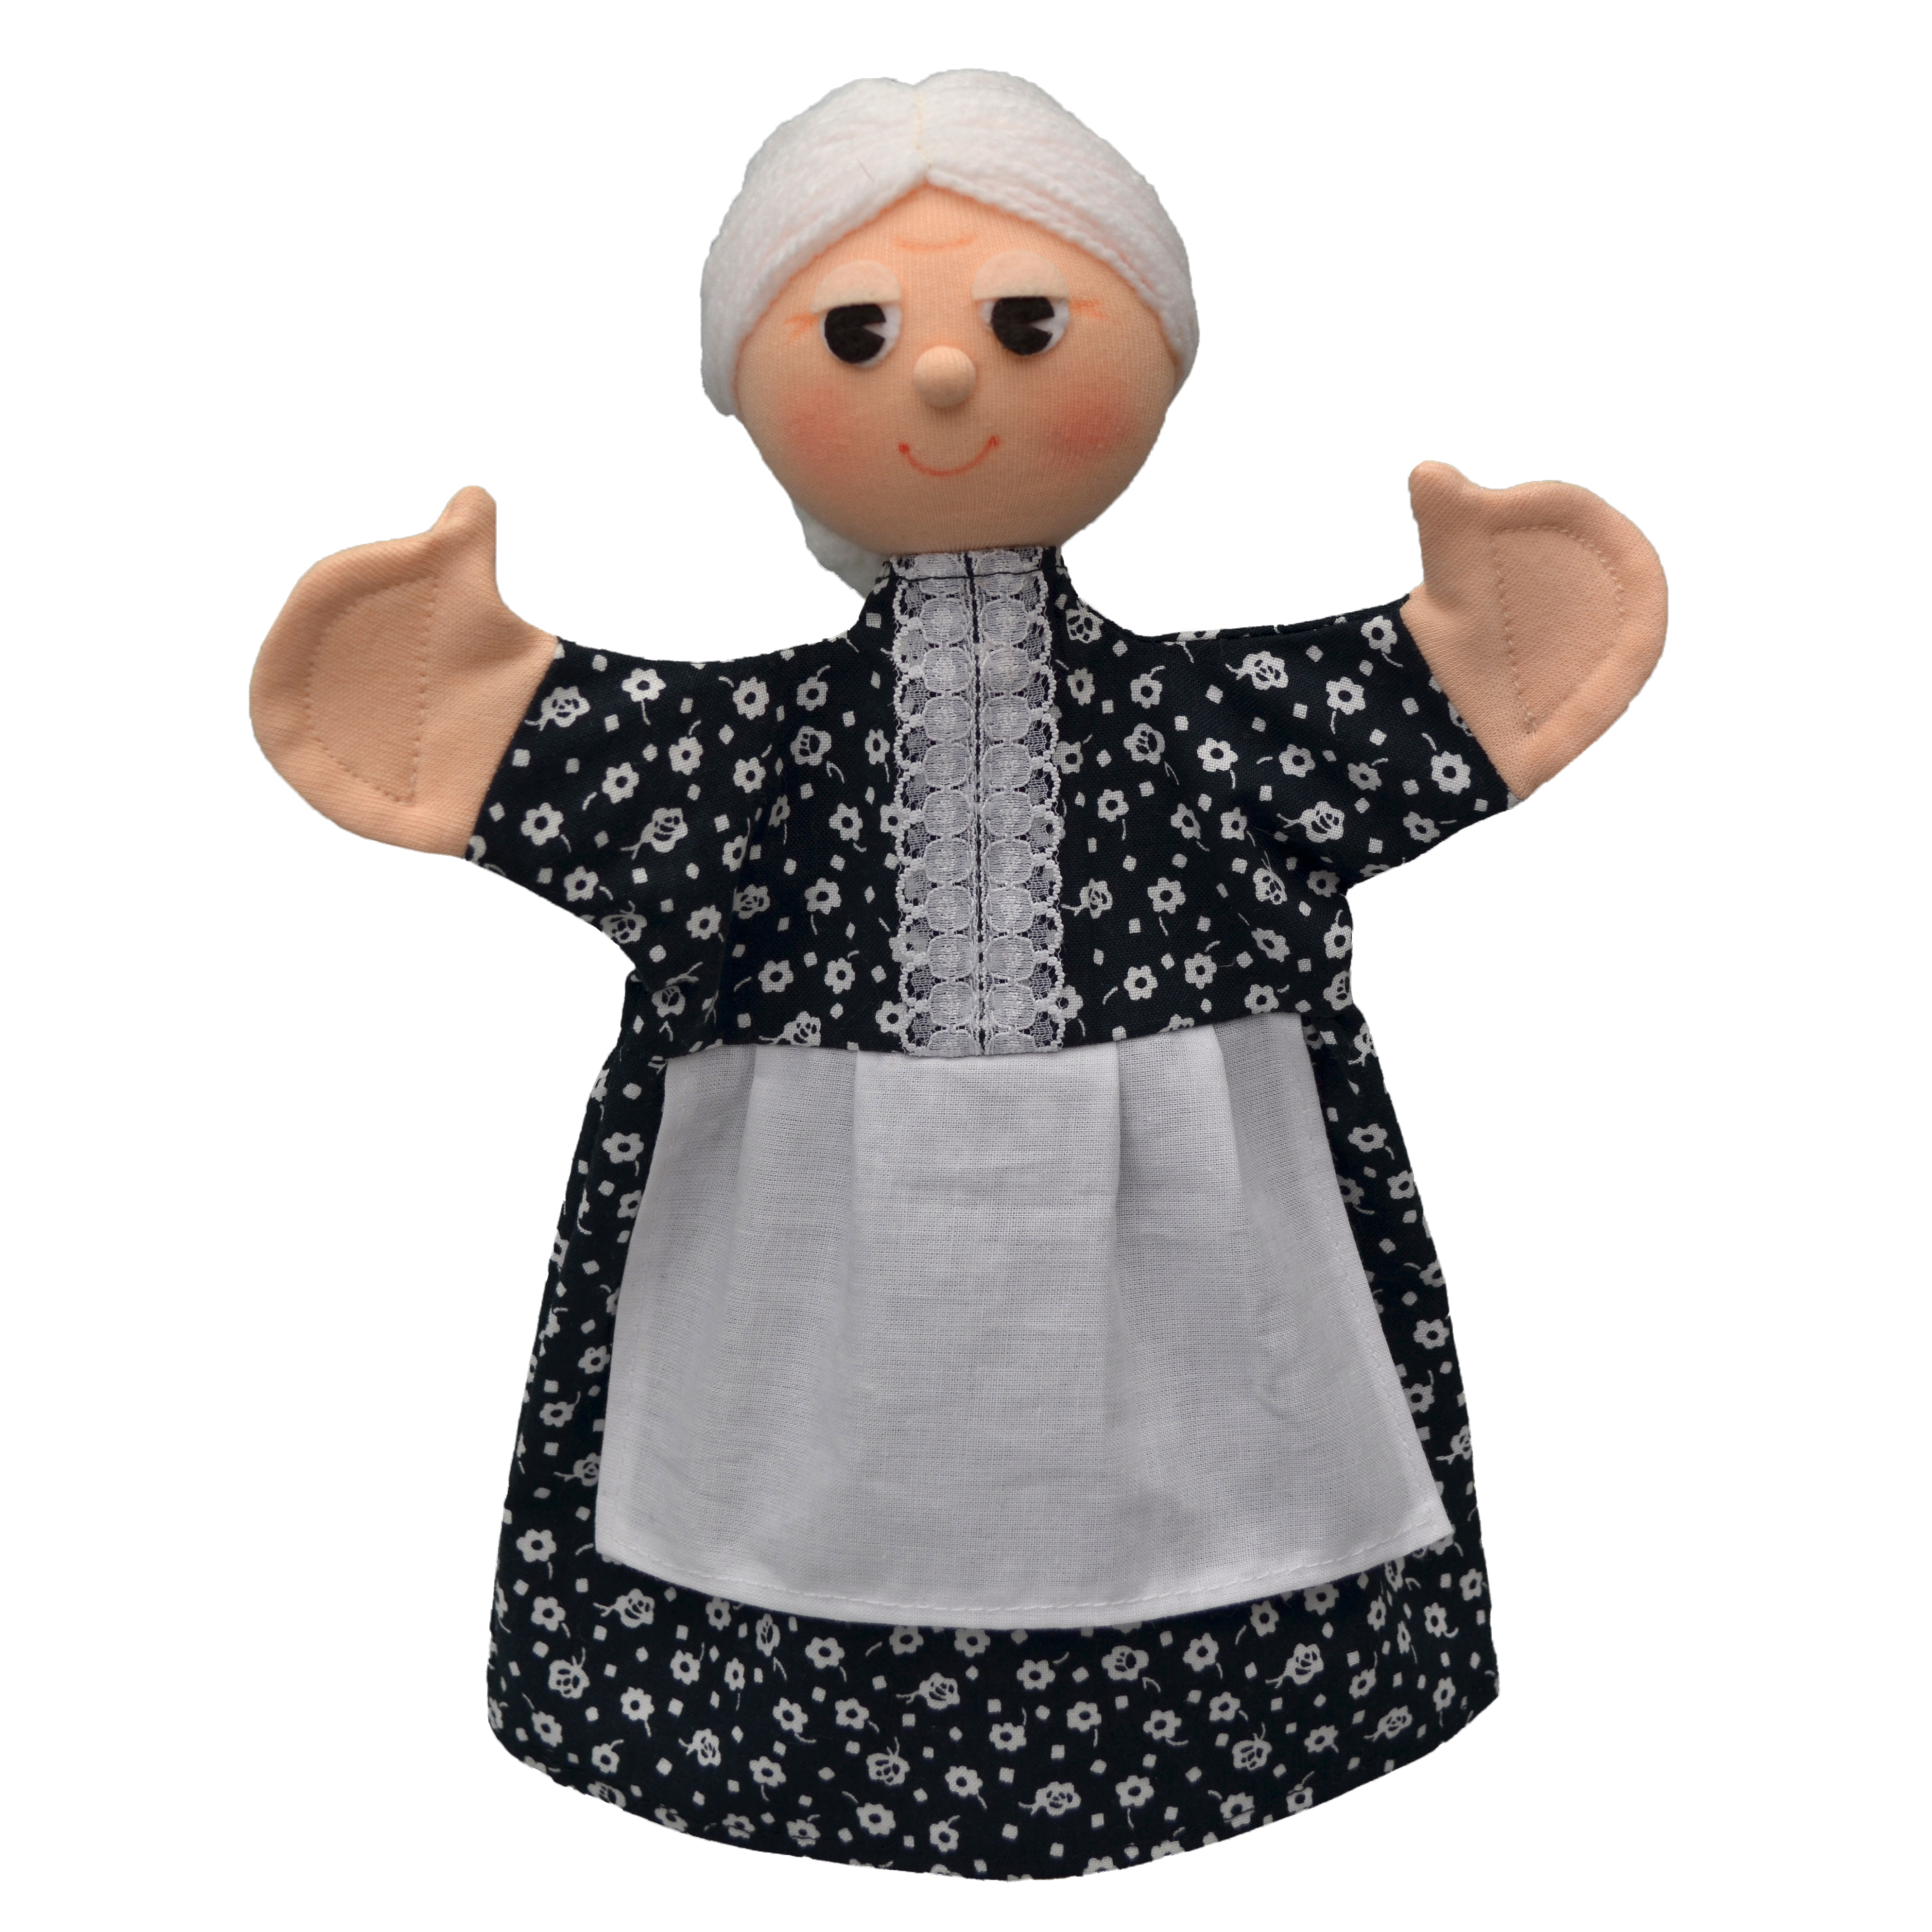 Hand puppet grandma - Czech handicraft